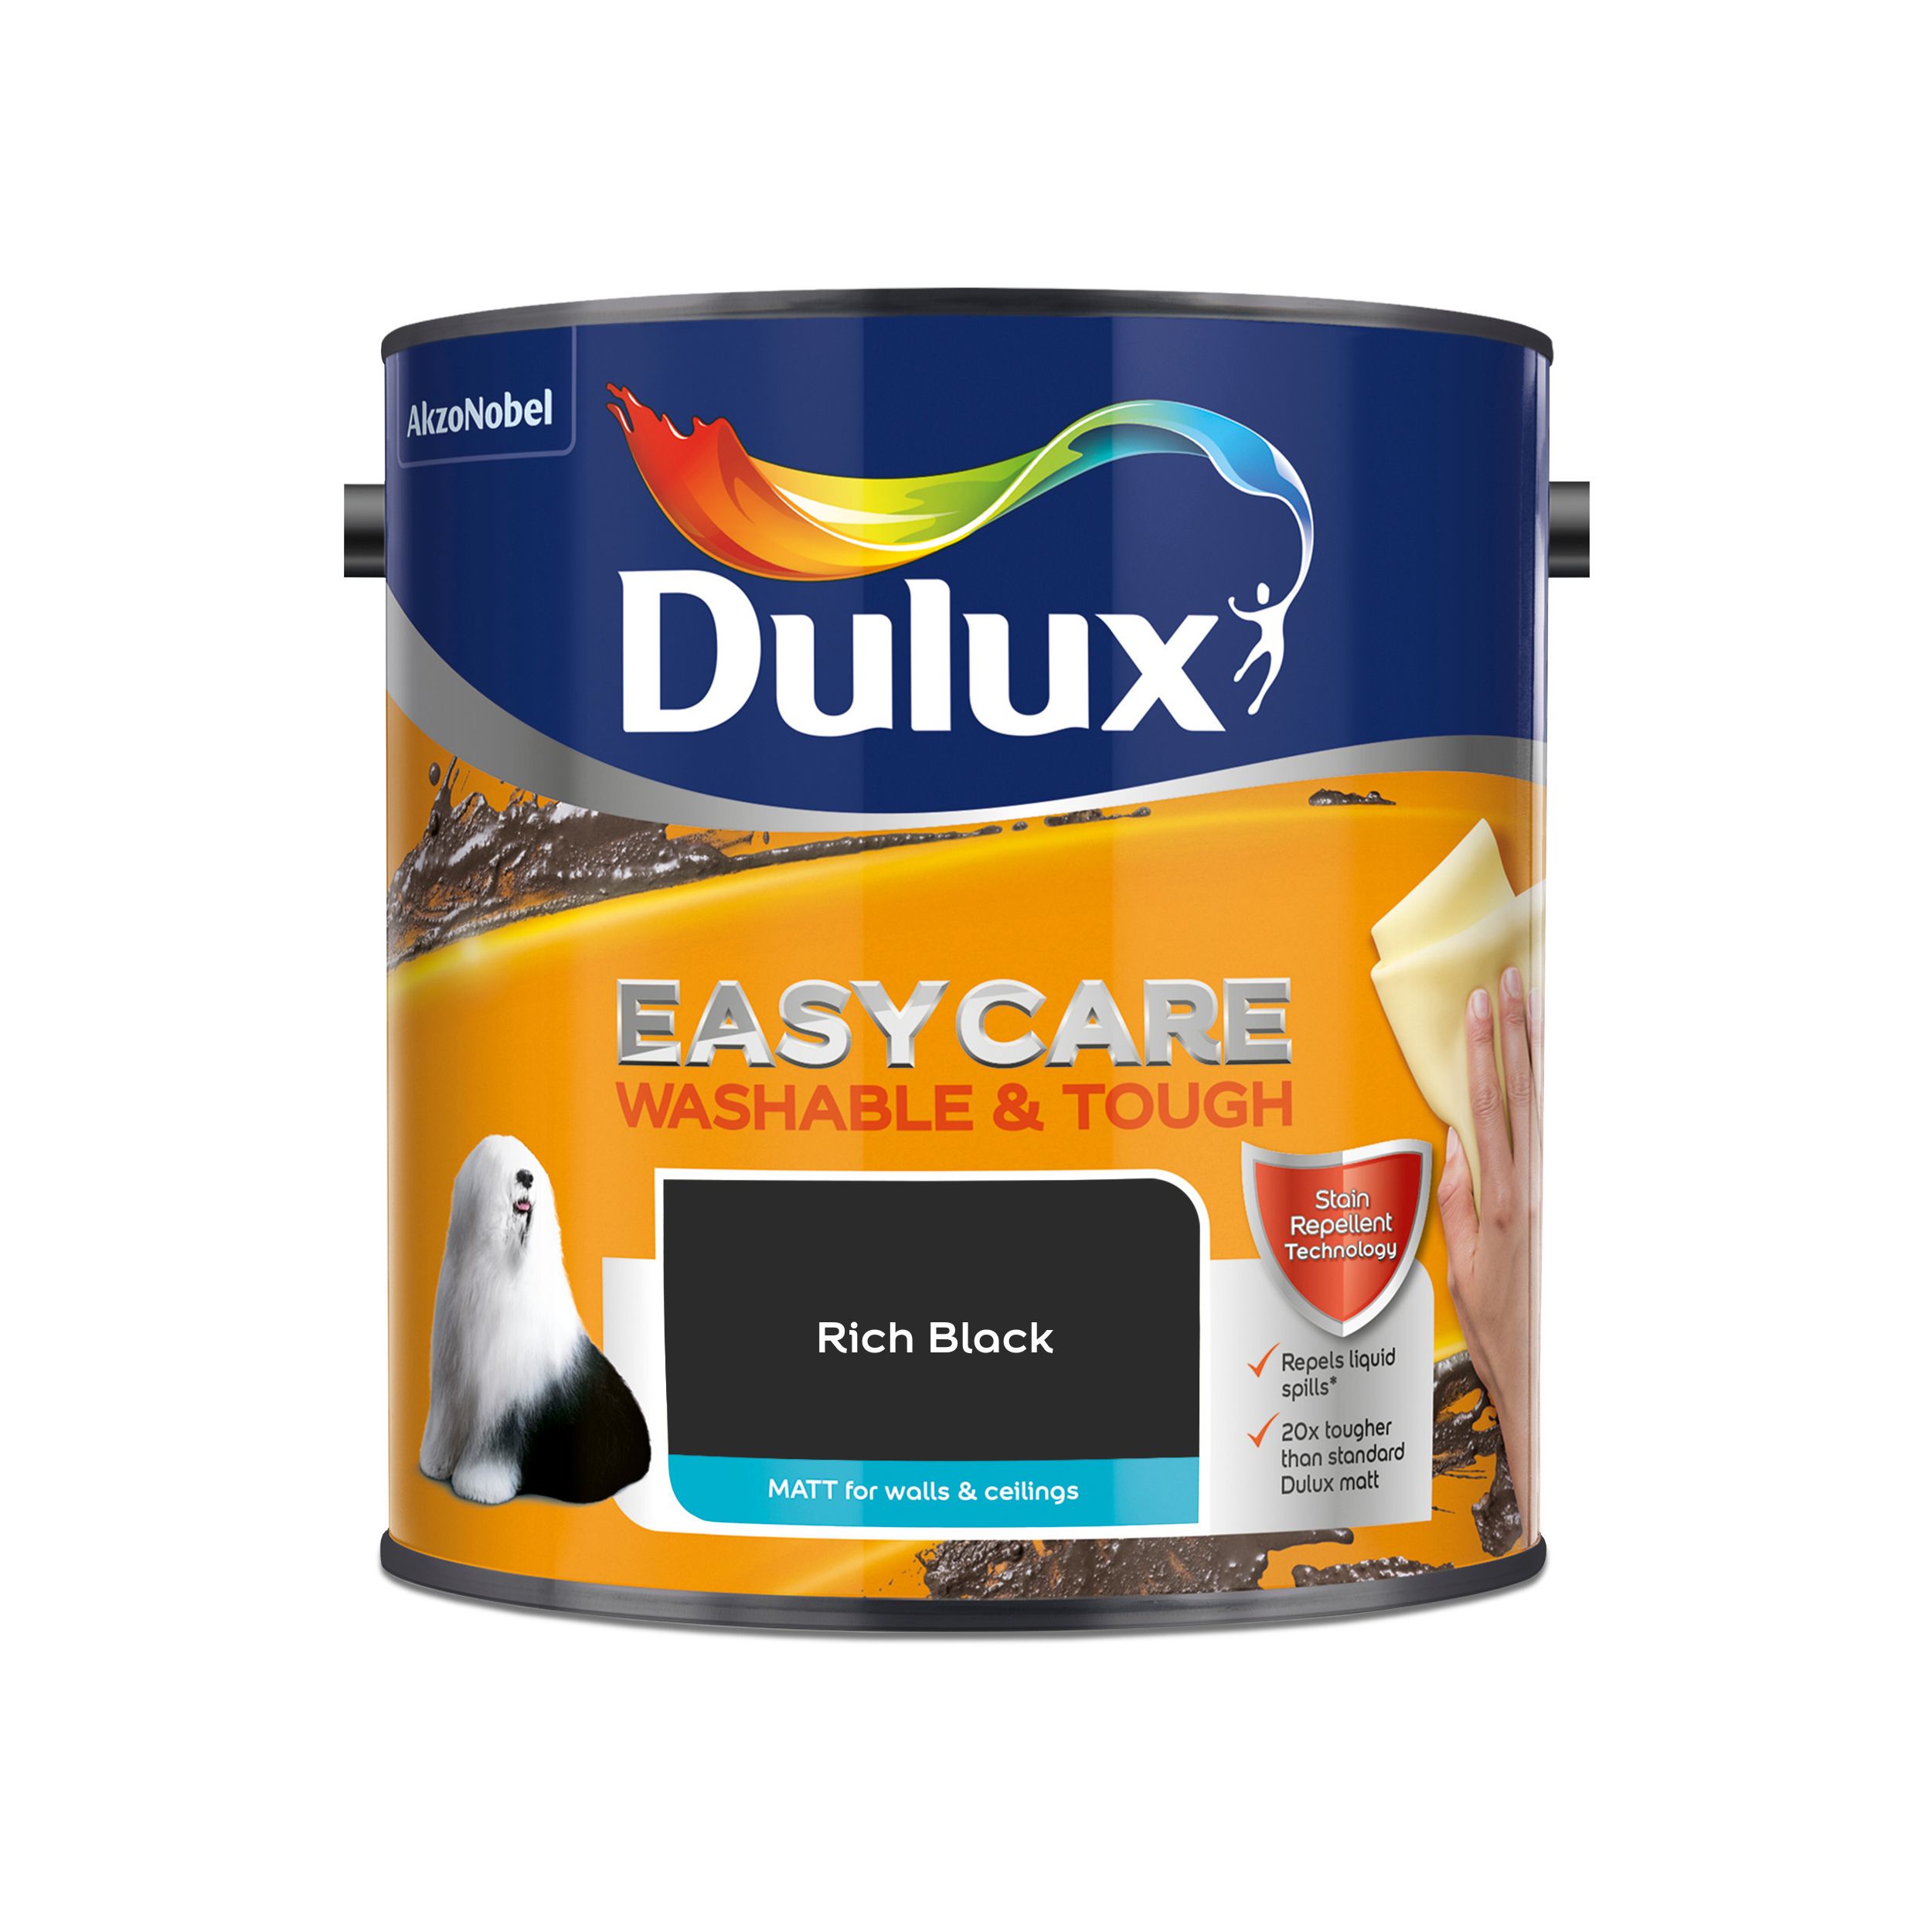 Dulux Easycare Rich black Matt Emulsion paint, 2.5L